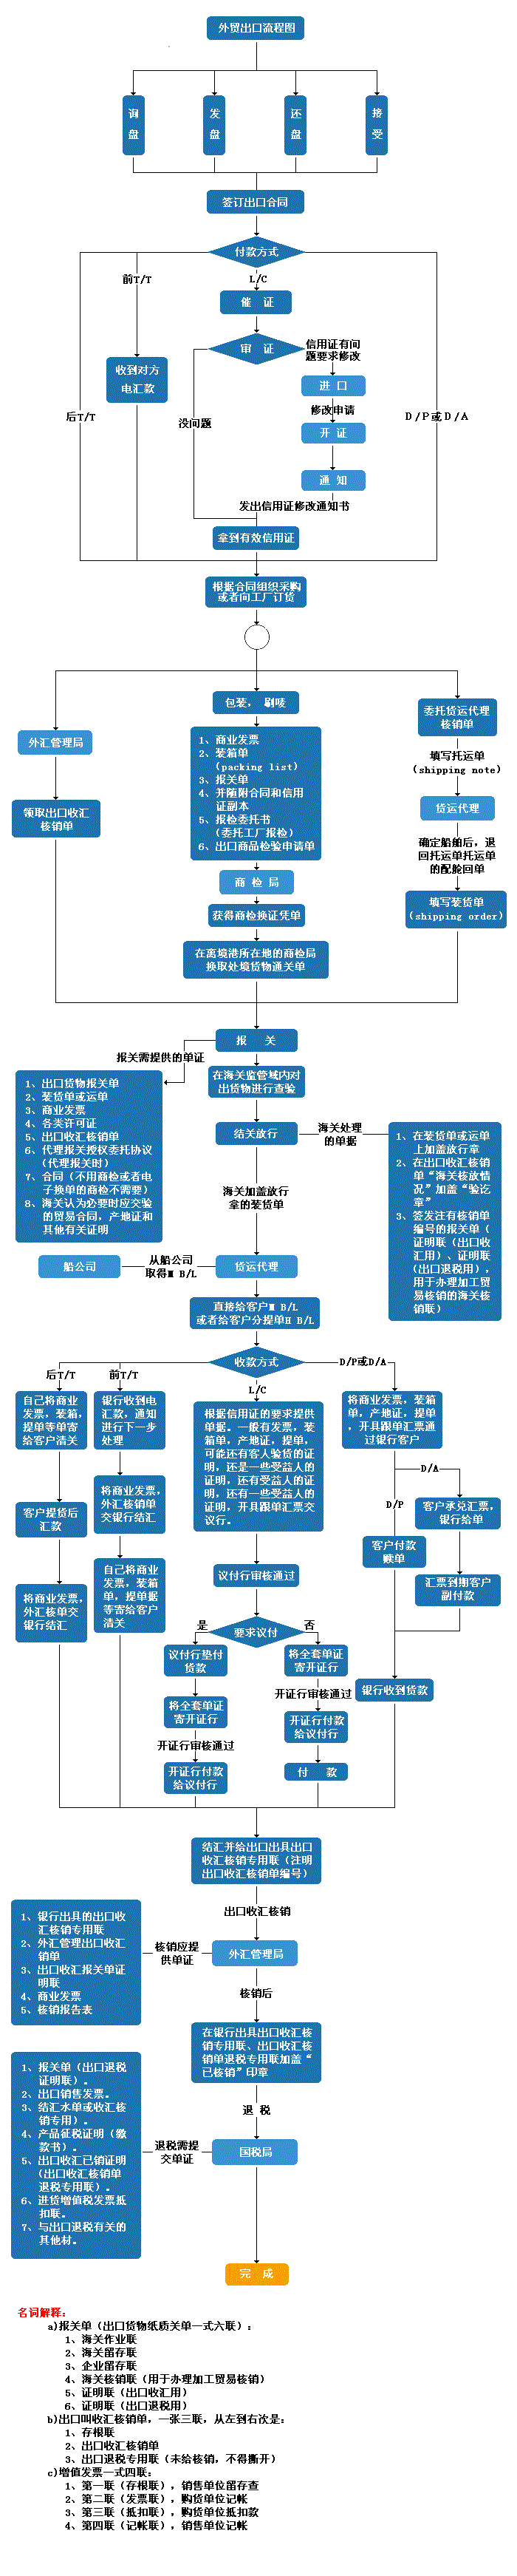 外贸流程的基本流程图